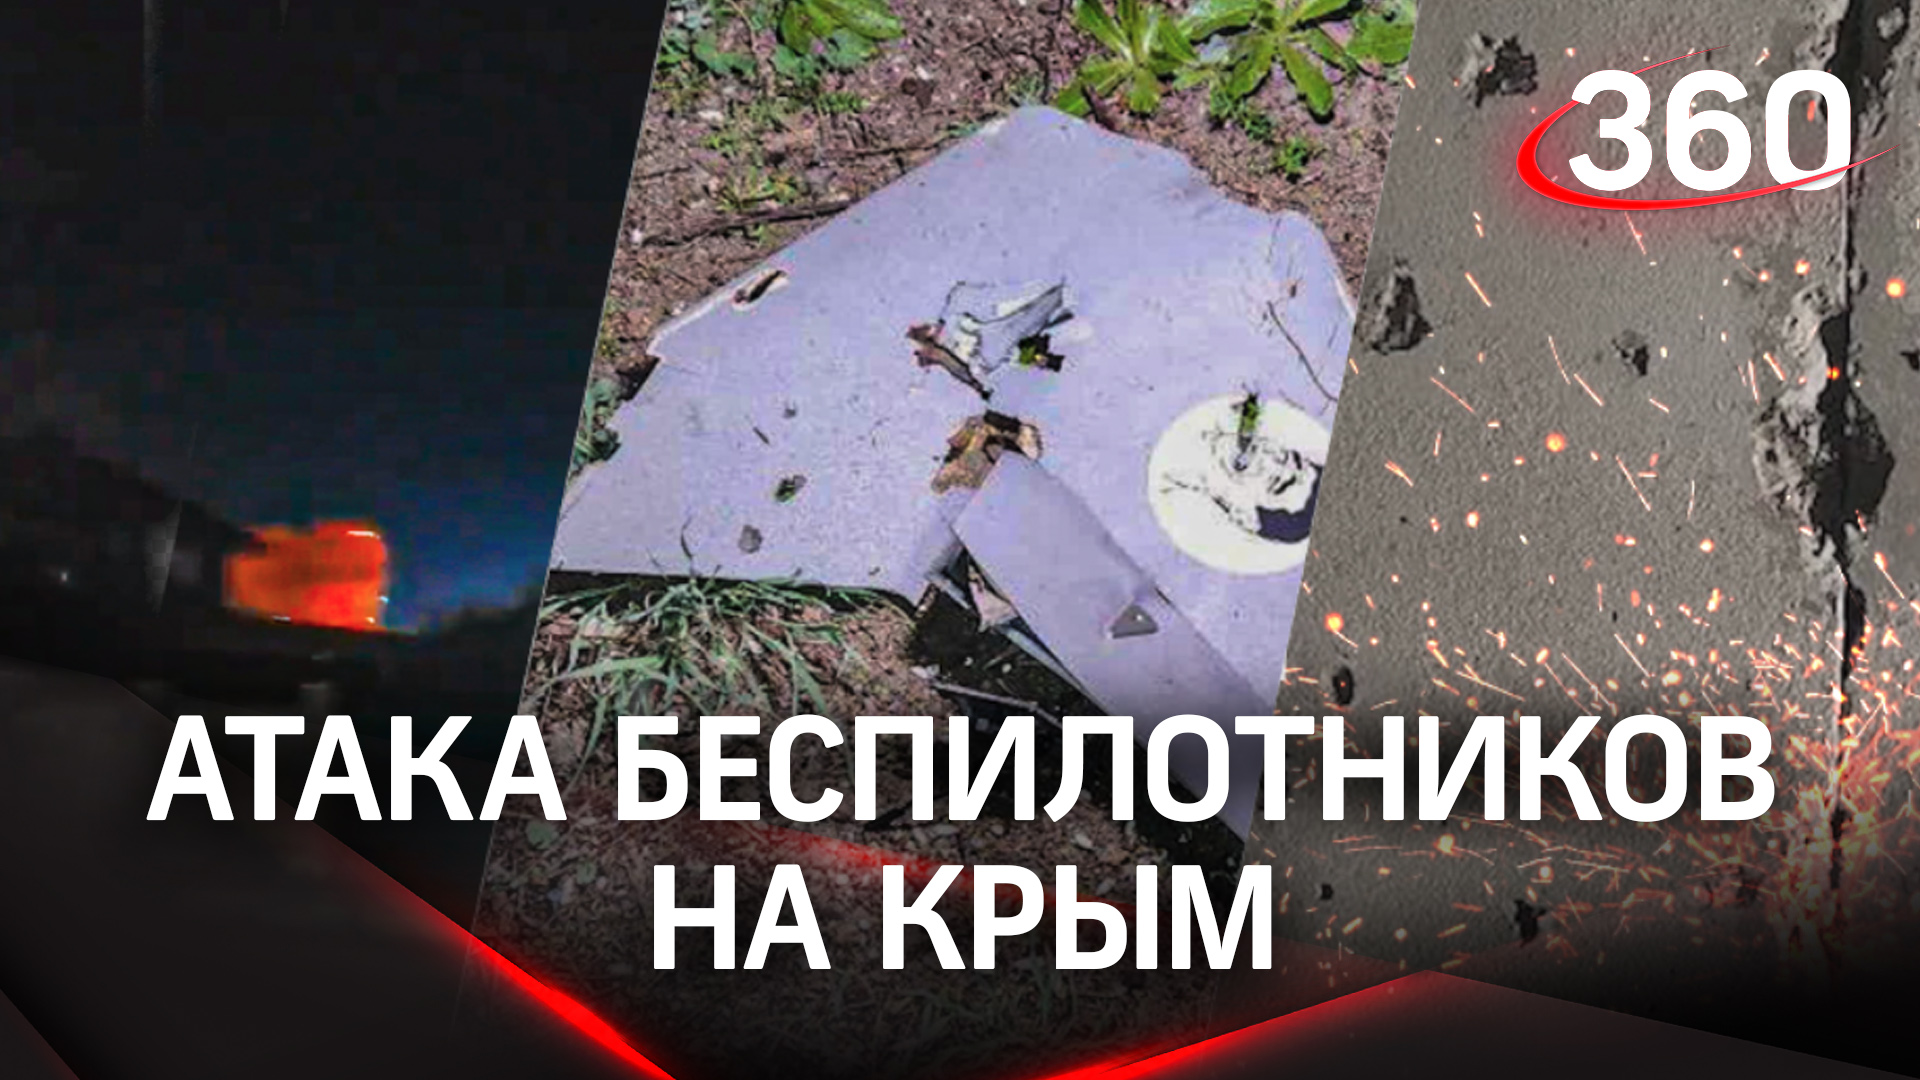 Система ПВО уничтожила дроны на севере Крыма. Повреждены дома, есть пострадавший. Видео последствий